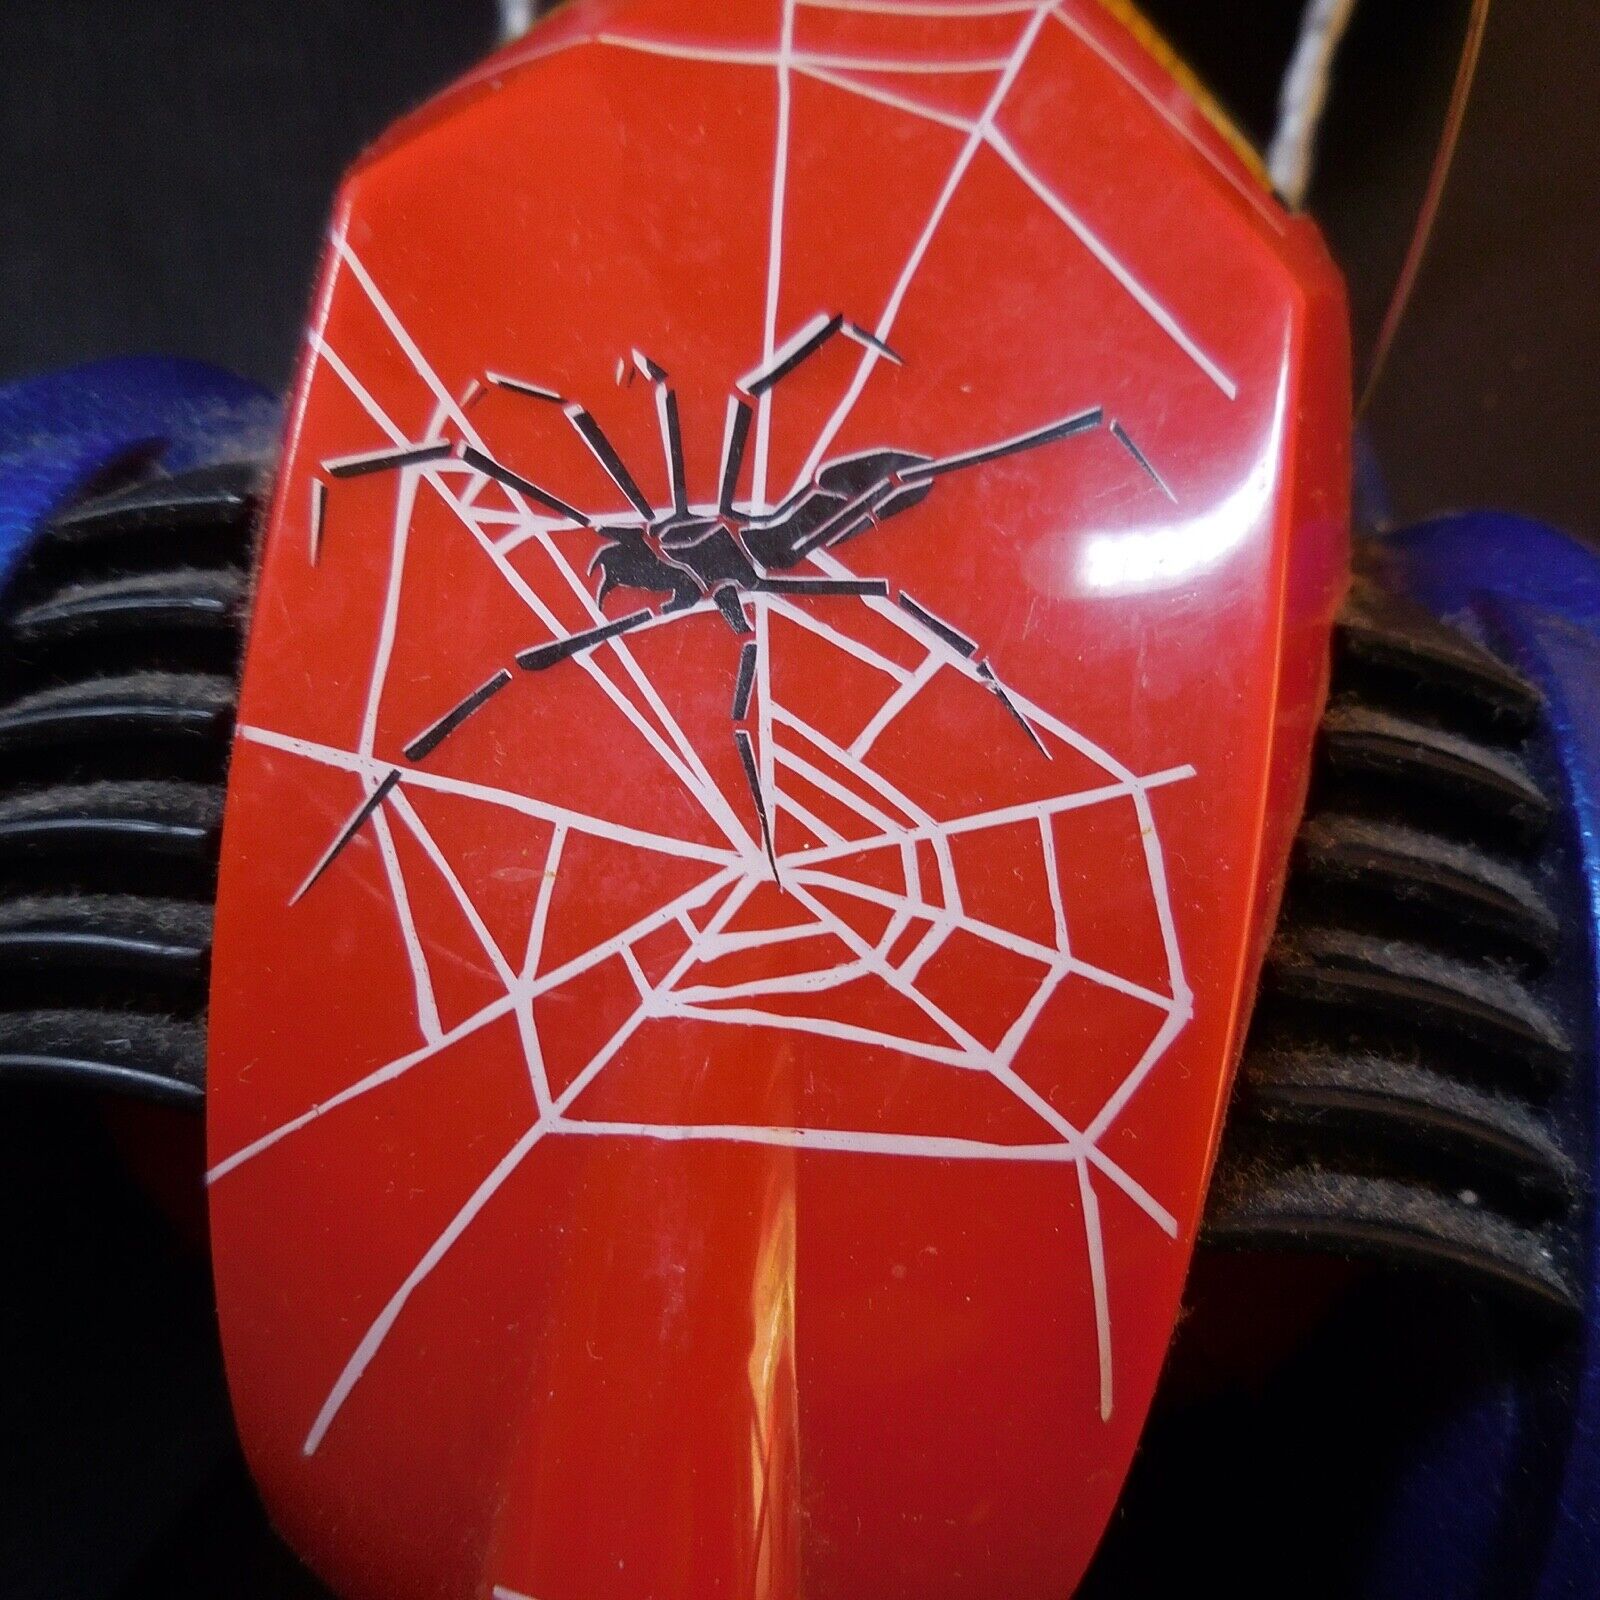 Marvel Voiture De Course Télécommandée Spider-man 77001 - Jeux et jouets  plein air - Creavea